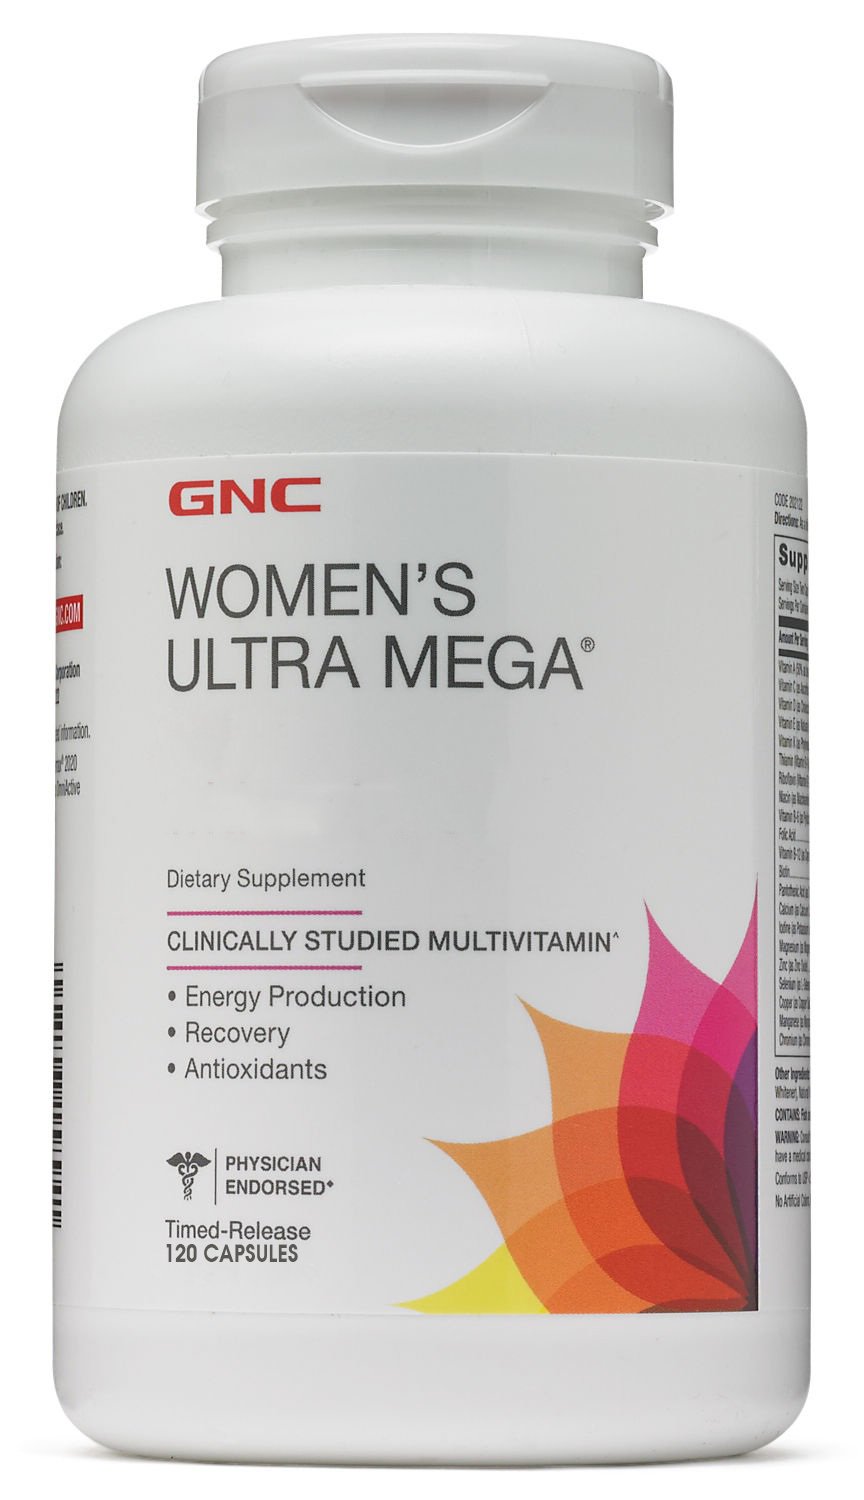 Витамины и минералы GNC Women's Ultra Mega, 120 капсул,  мл, GNC. Витамины и минералы. Поддержание здоровья Укрепление иммунитета 